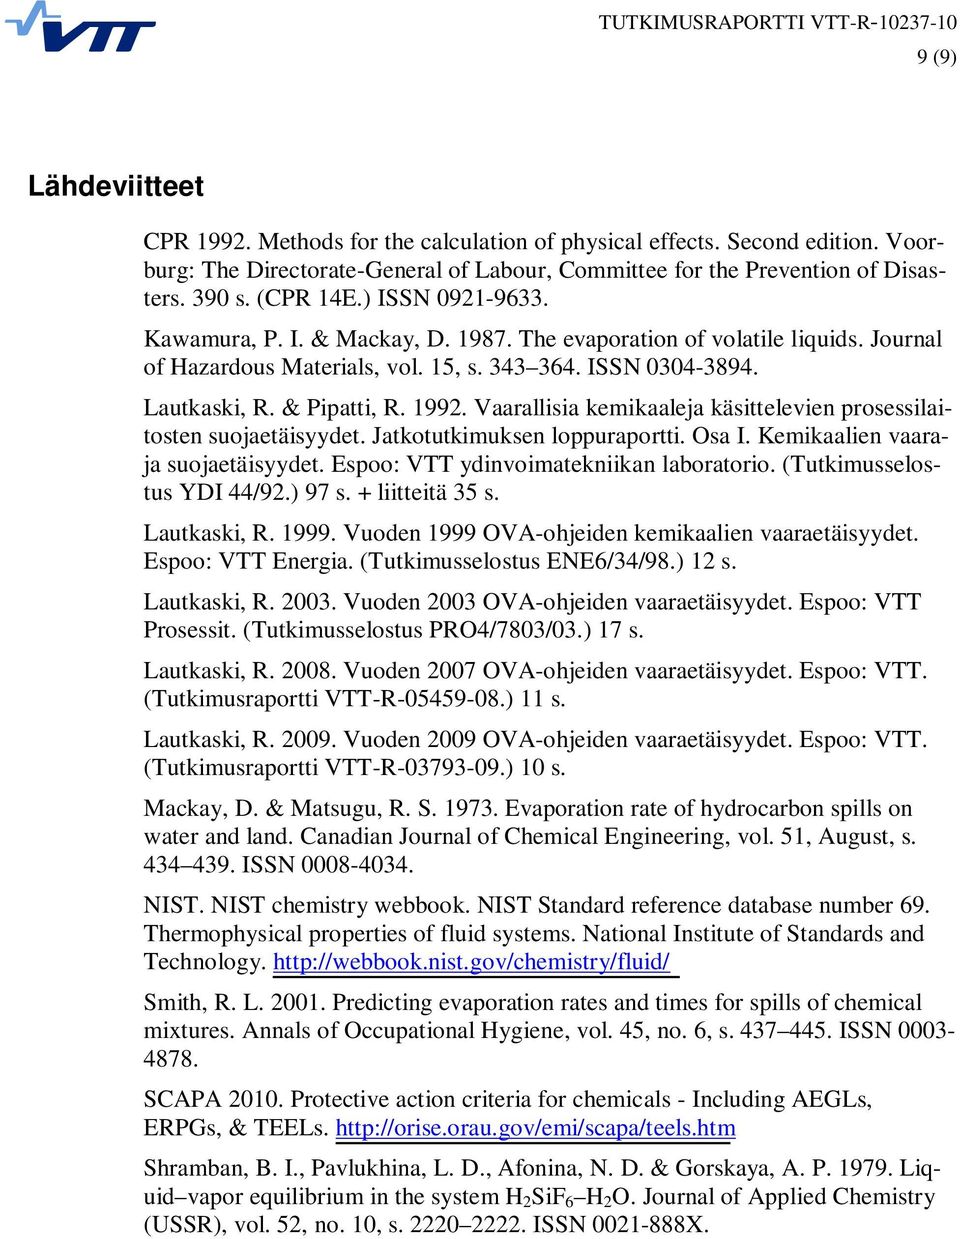 Vaarallisia kemikaaleja käsittelevien prosessilaitosten suojaetäisyydet. Jatkotutkimuksen loppuraportti. Osa I. Kemikaalien vaaraja suojaetäisyydet. Espoo: VTT ydinvoimatekniikan laboratorio.